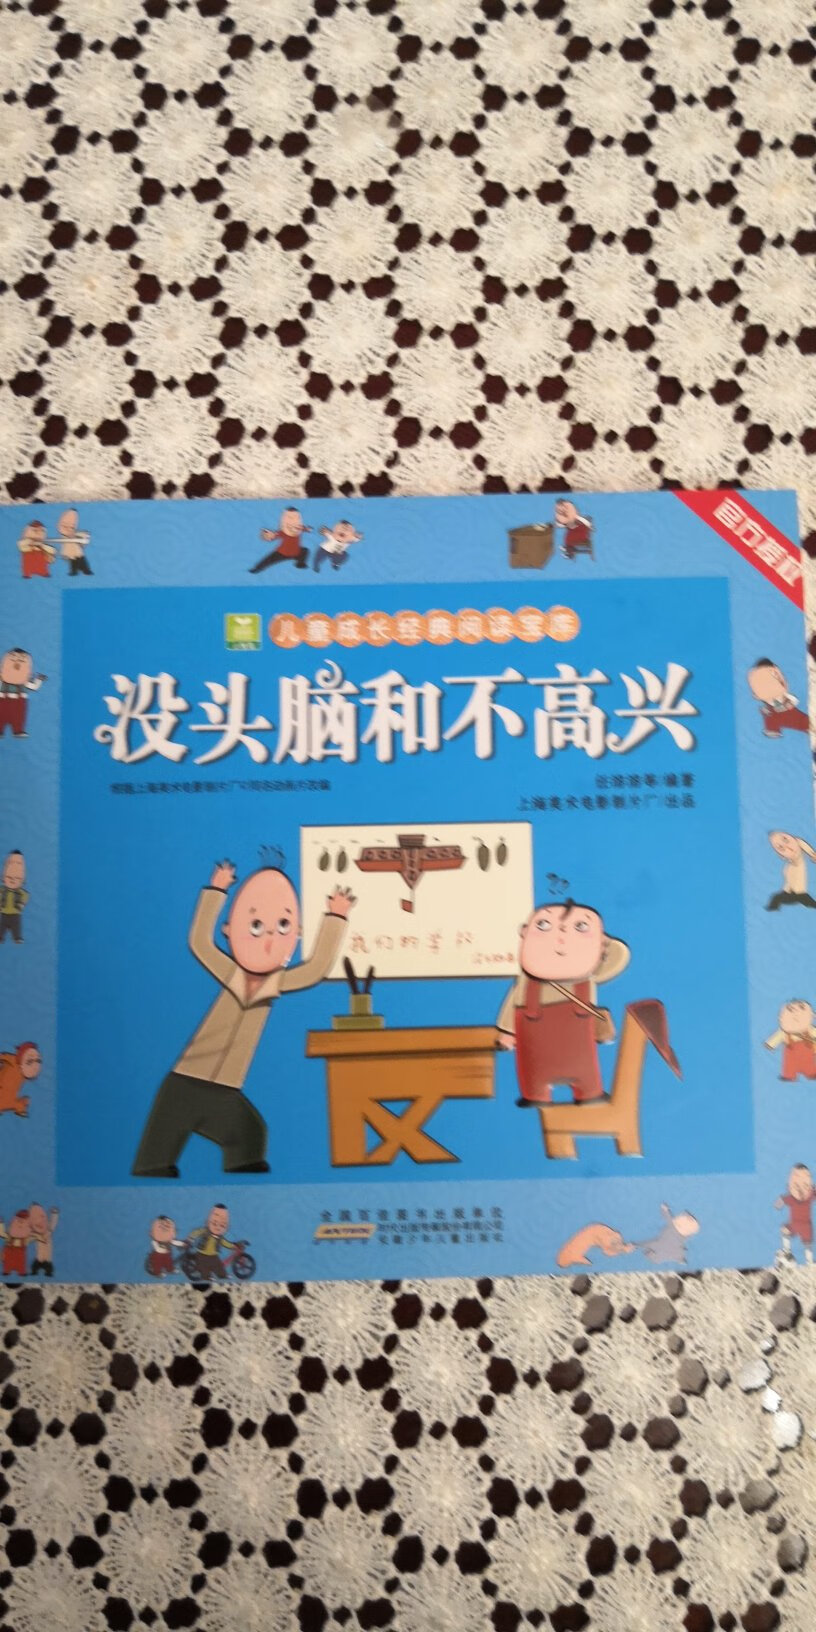 汉语拼音标准的版本，孩子自己就可以阅读。篇章也很多，孩子很喜欢。